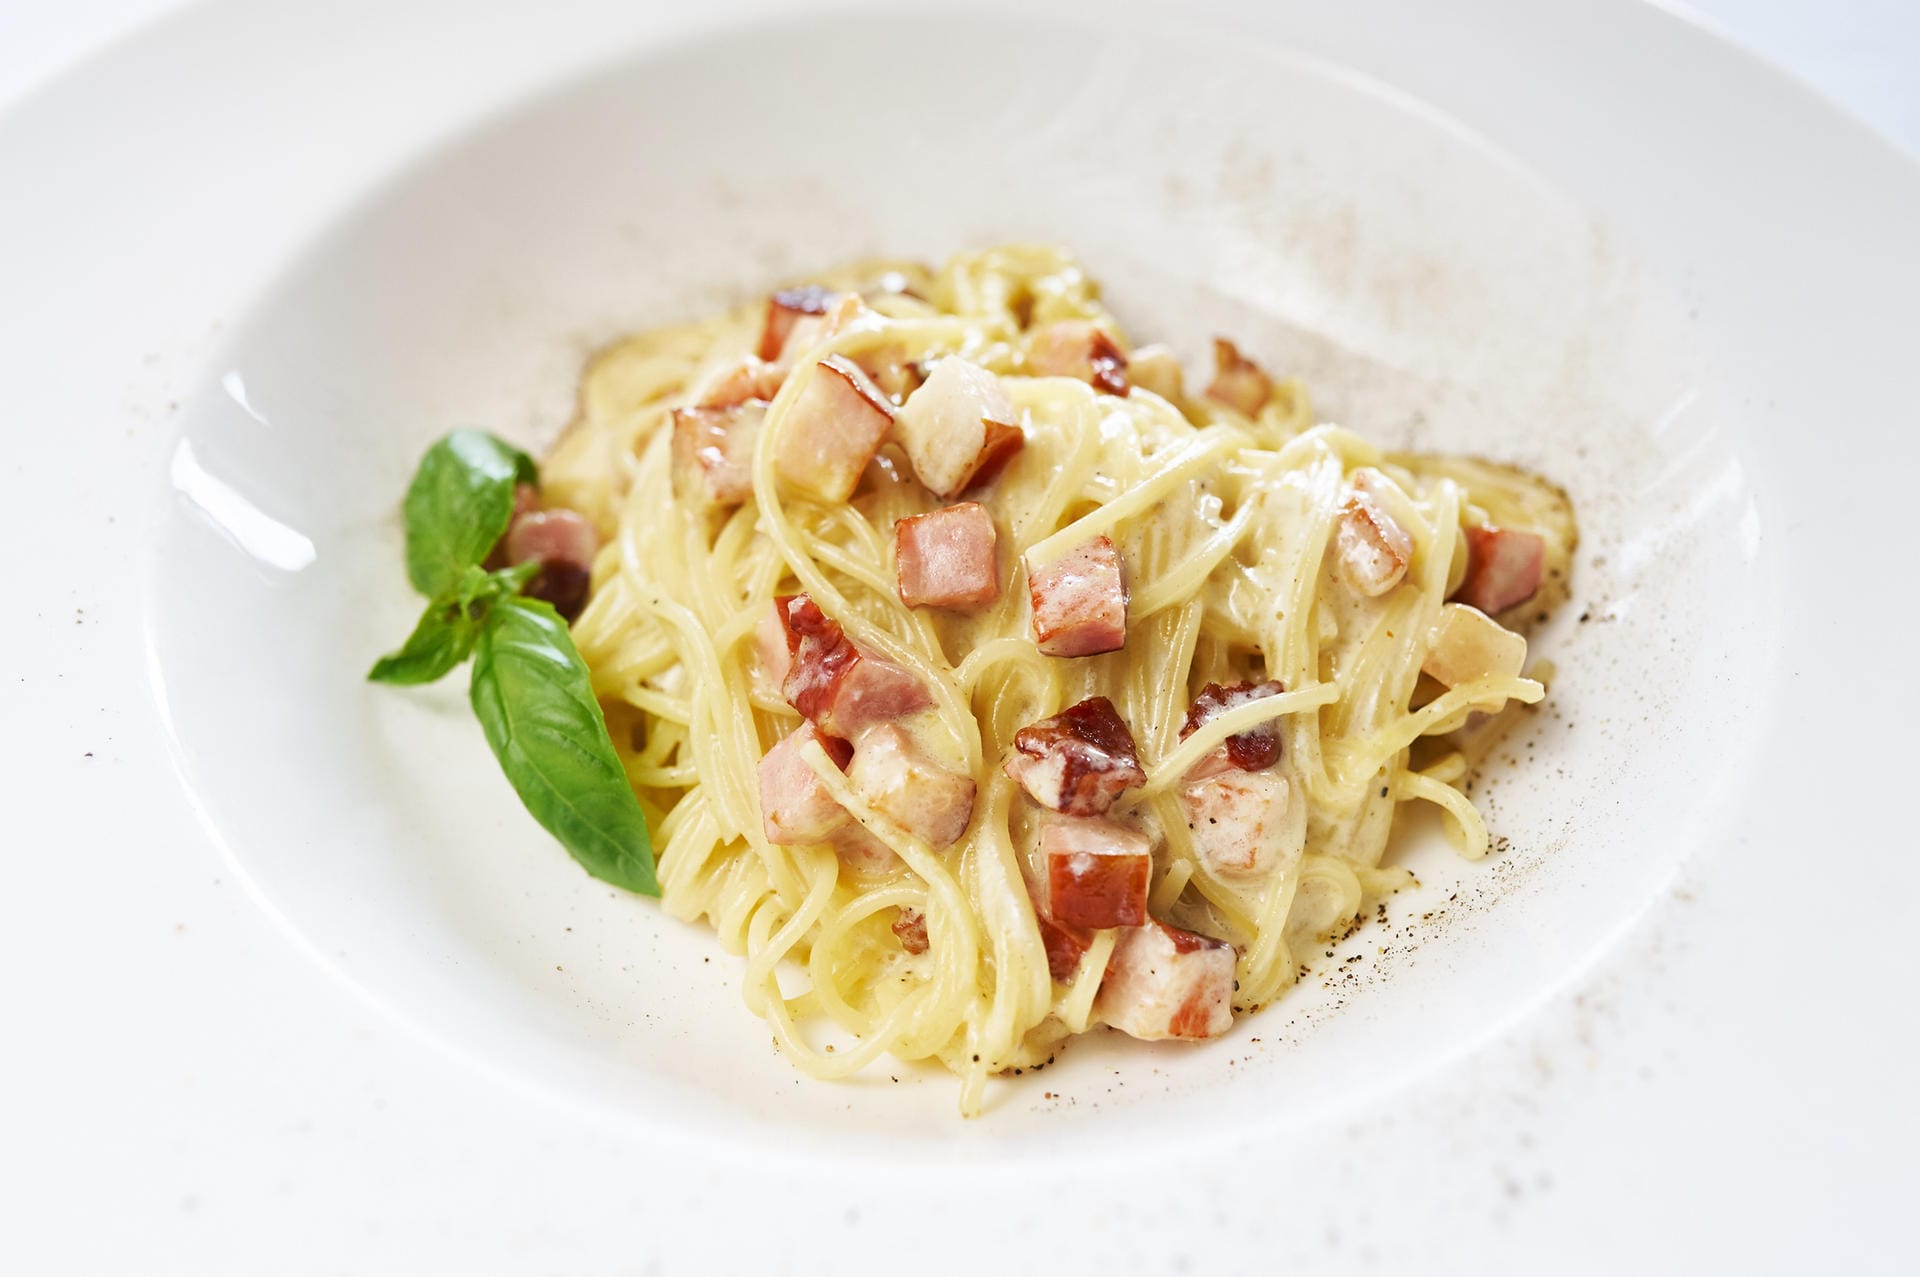 Spaghetti Carbonara ist ein Klassiker der Region Latium. Bei deutschen Italienern kommt das Traditionsgericht oft mit Sahnesauce und Kochschinkenstreifen, weil's einfach zu machen ist und sehr günstig im Einkauf. Den Deutschen schmeckt's trotzdem.